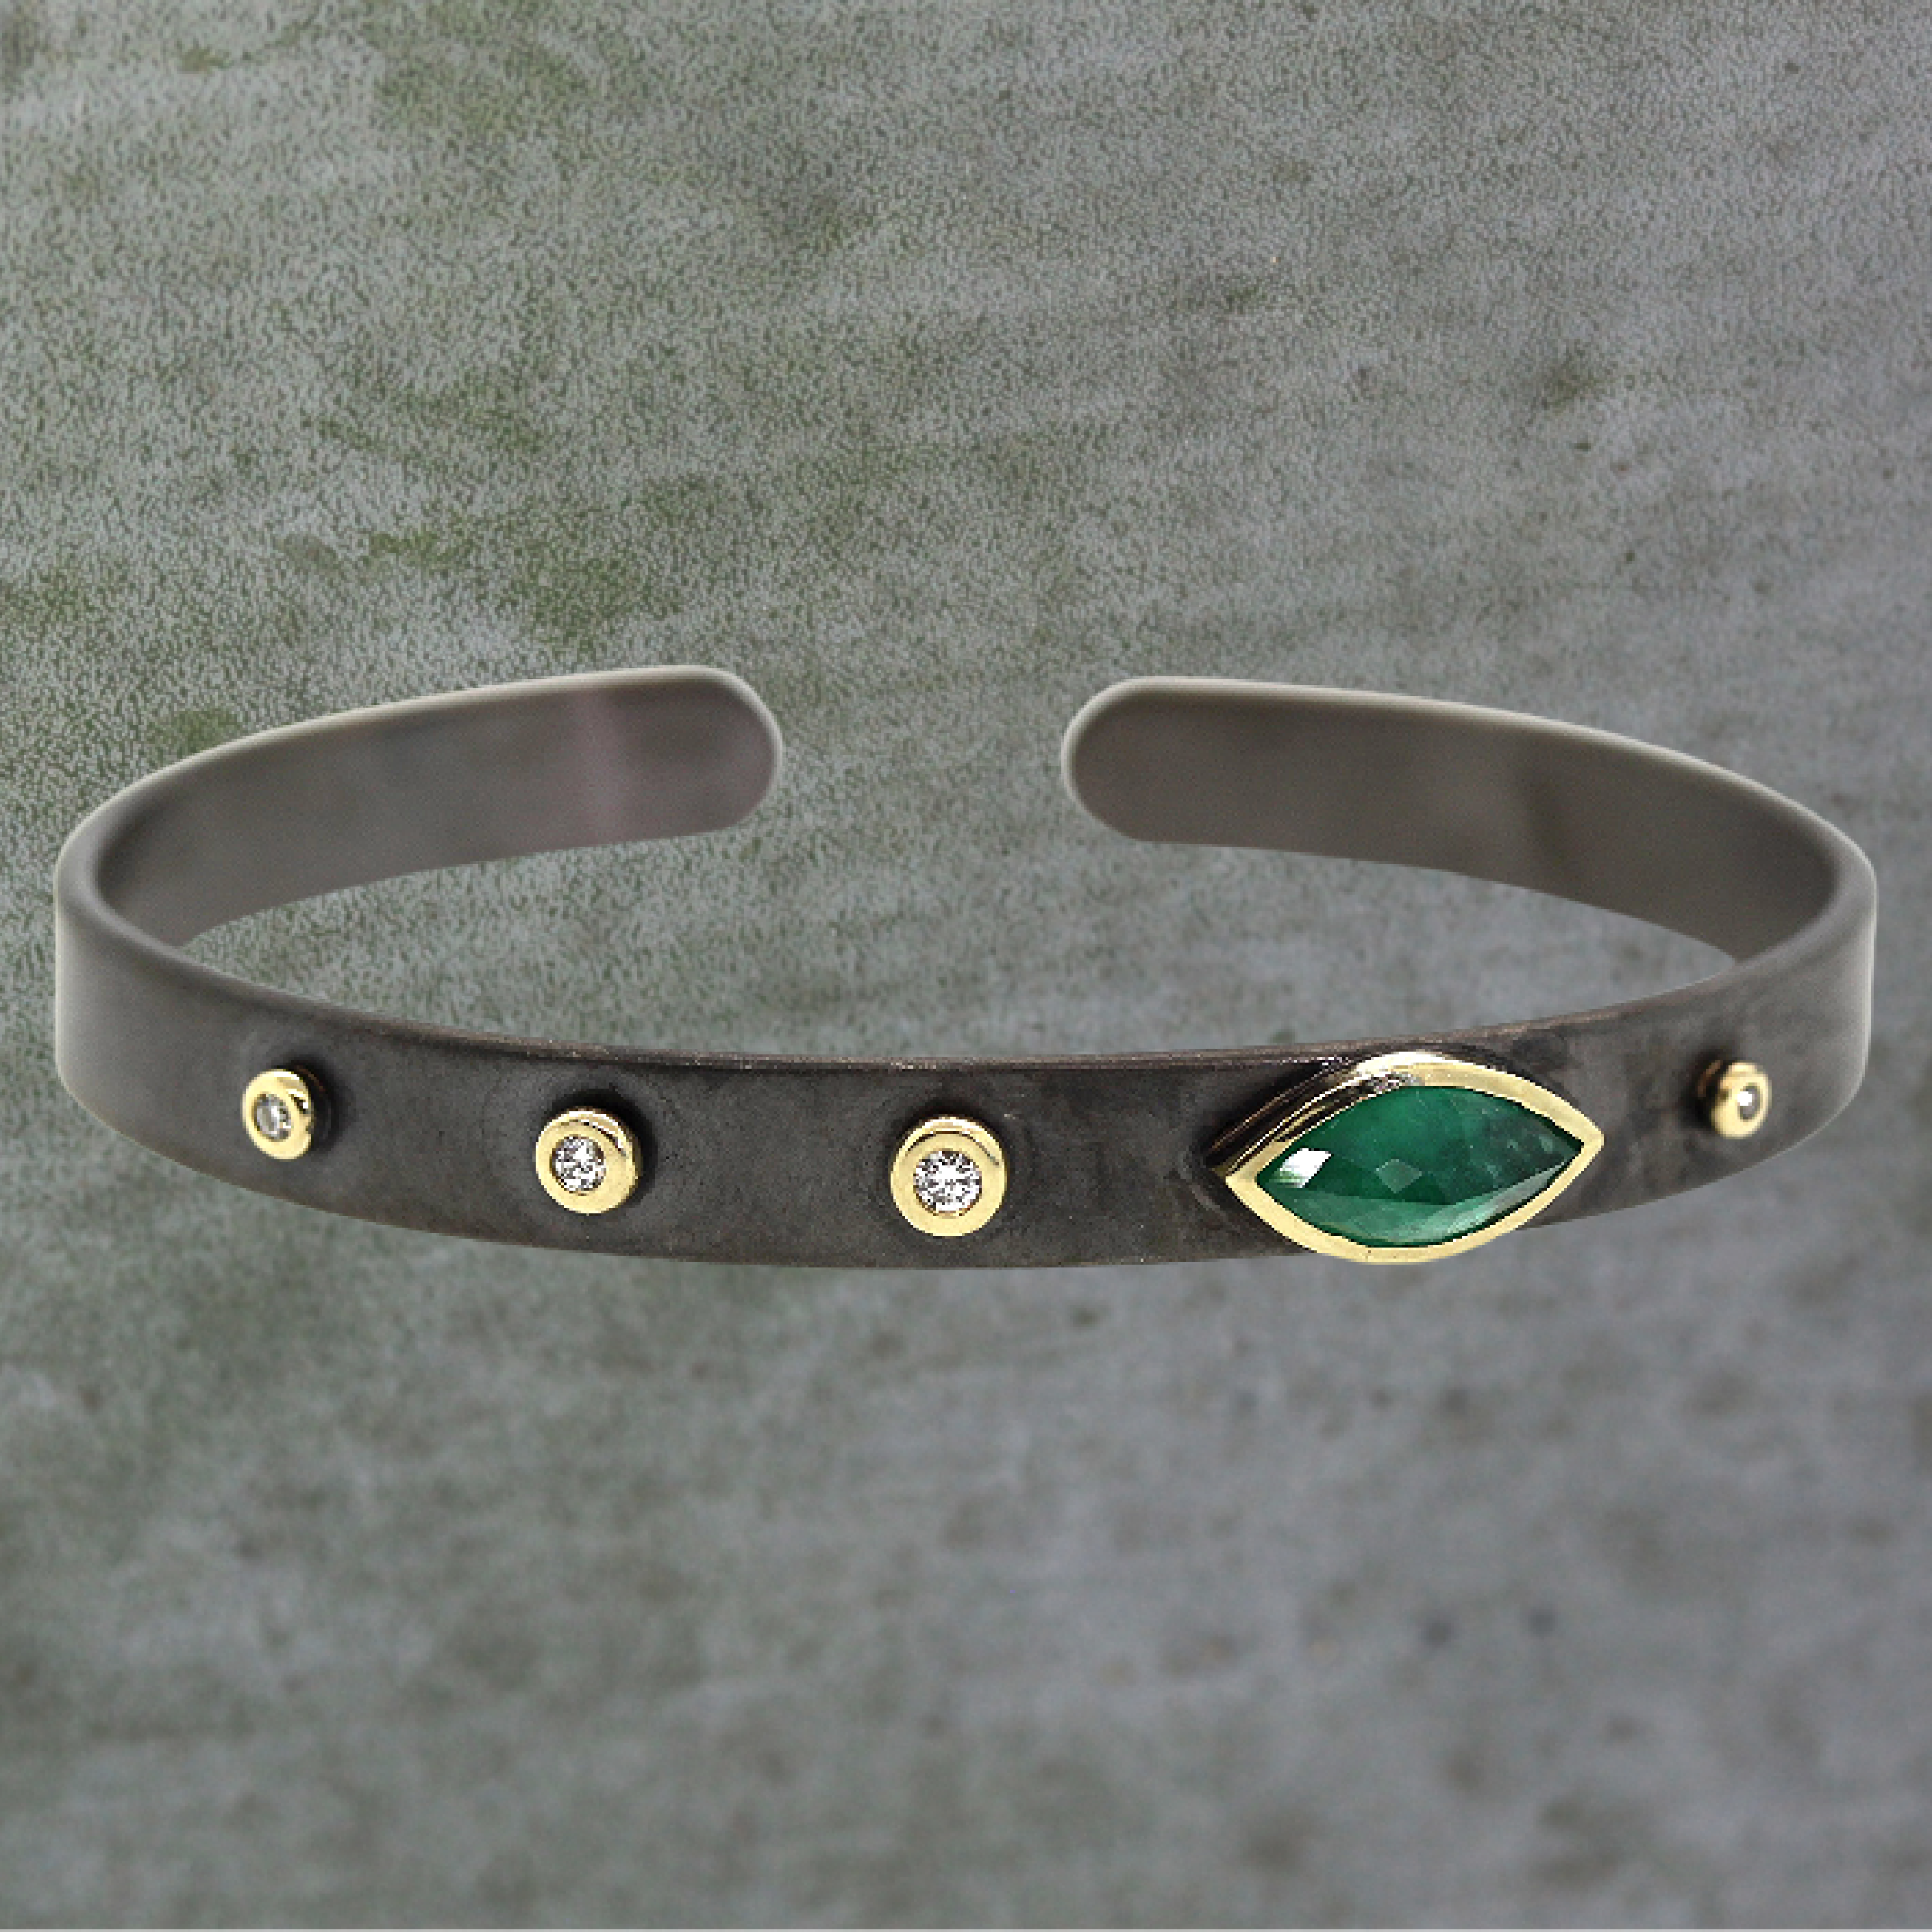 Emerald & Diamond Cuff Bracelet